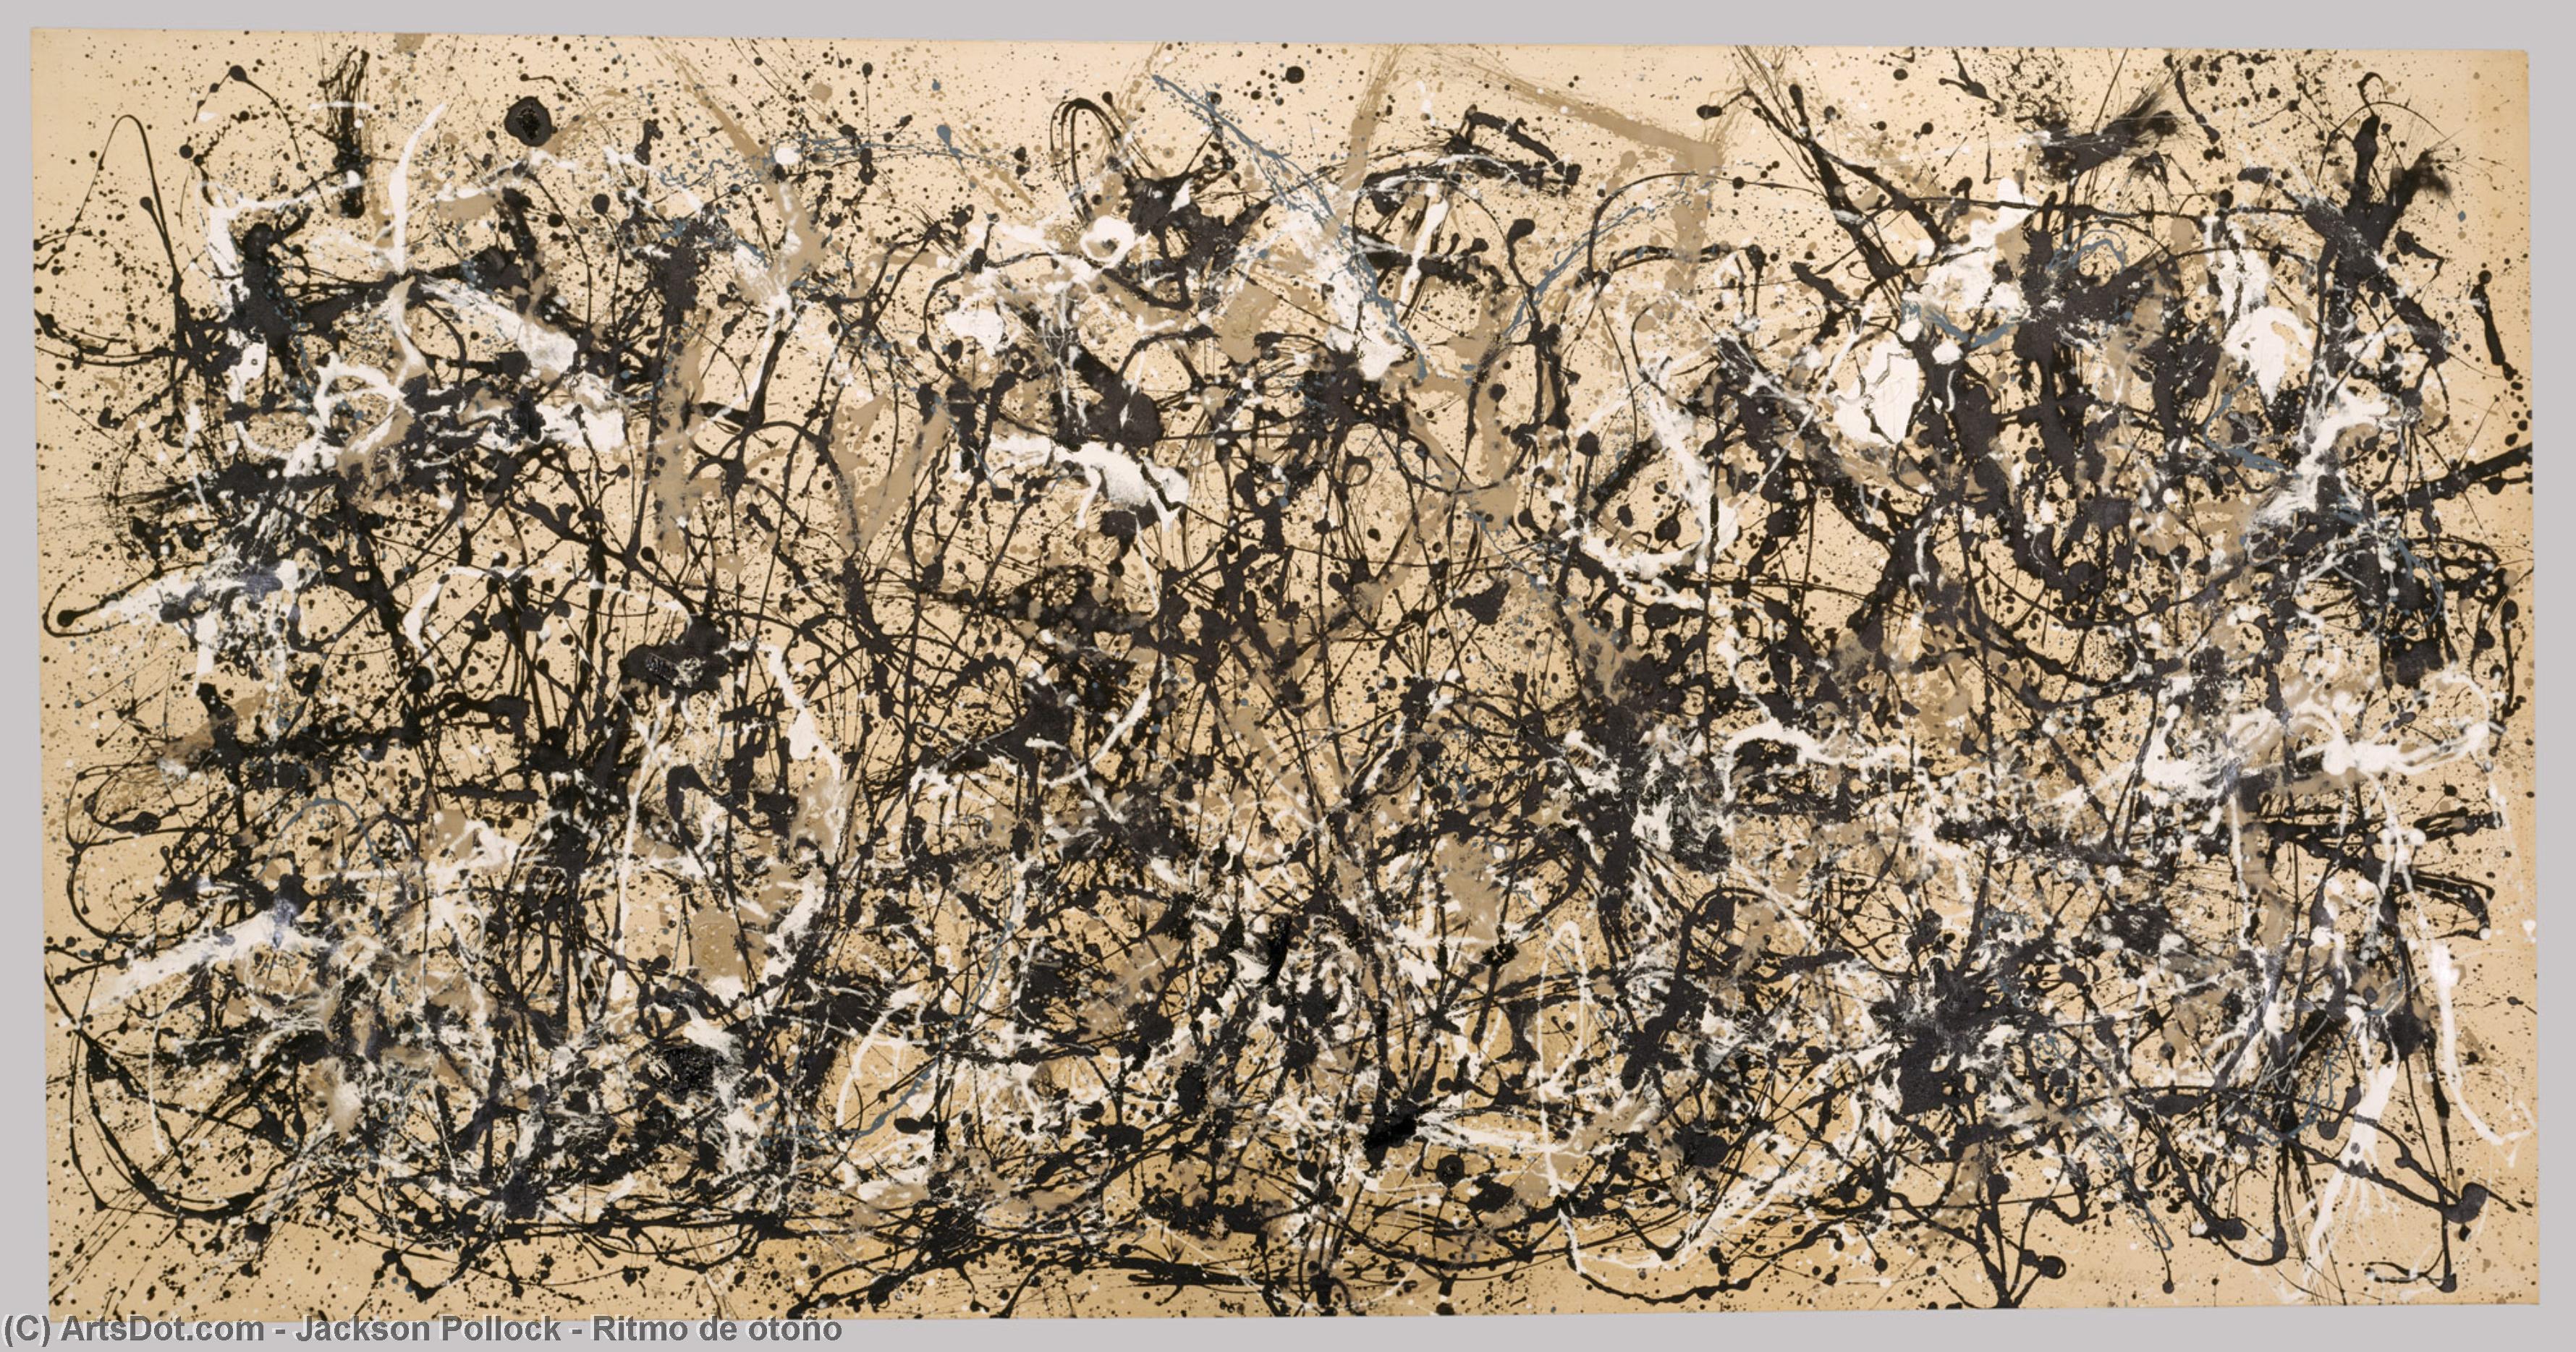 WikiOO.org - Encyclopedia of Fine Arts - Malba, Artwork Jackson Pollock - Ritmo de otoño